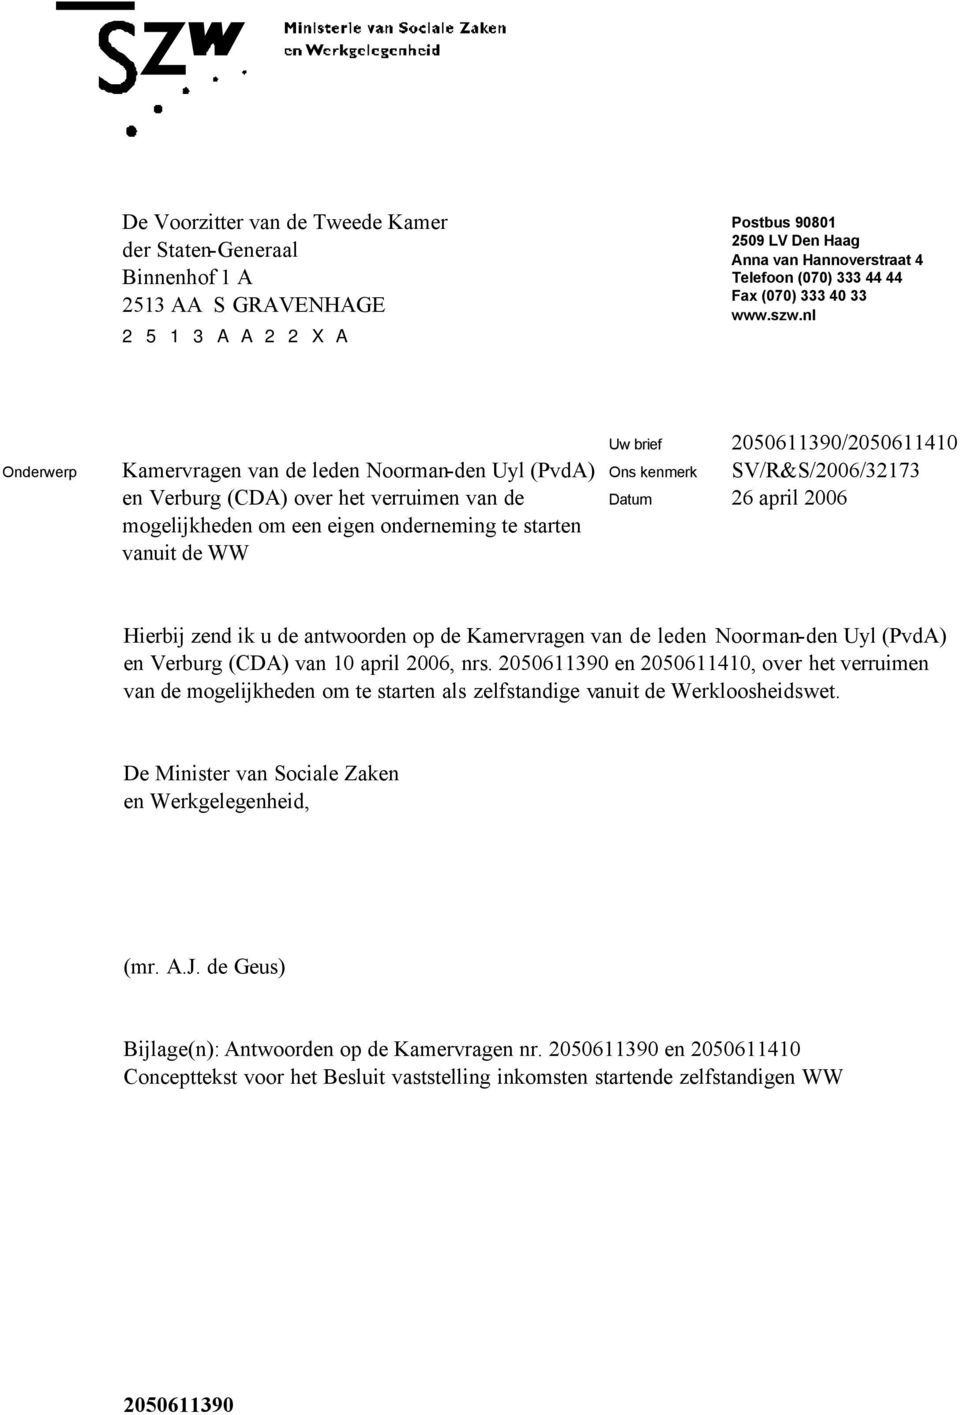 nl Onderwerp Kamervragen van de leden Noorman-den Uyl (PvdA) en Verburg (CDA) over het verruimen van de mogelijkheden om een eigen onderneming te starten vanuit de WW Uw brief 2050611390/2050611410